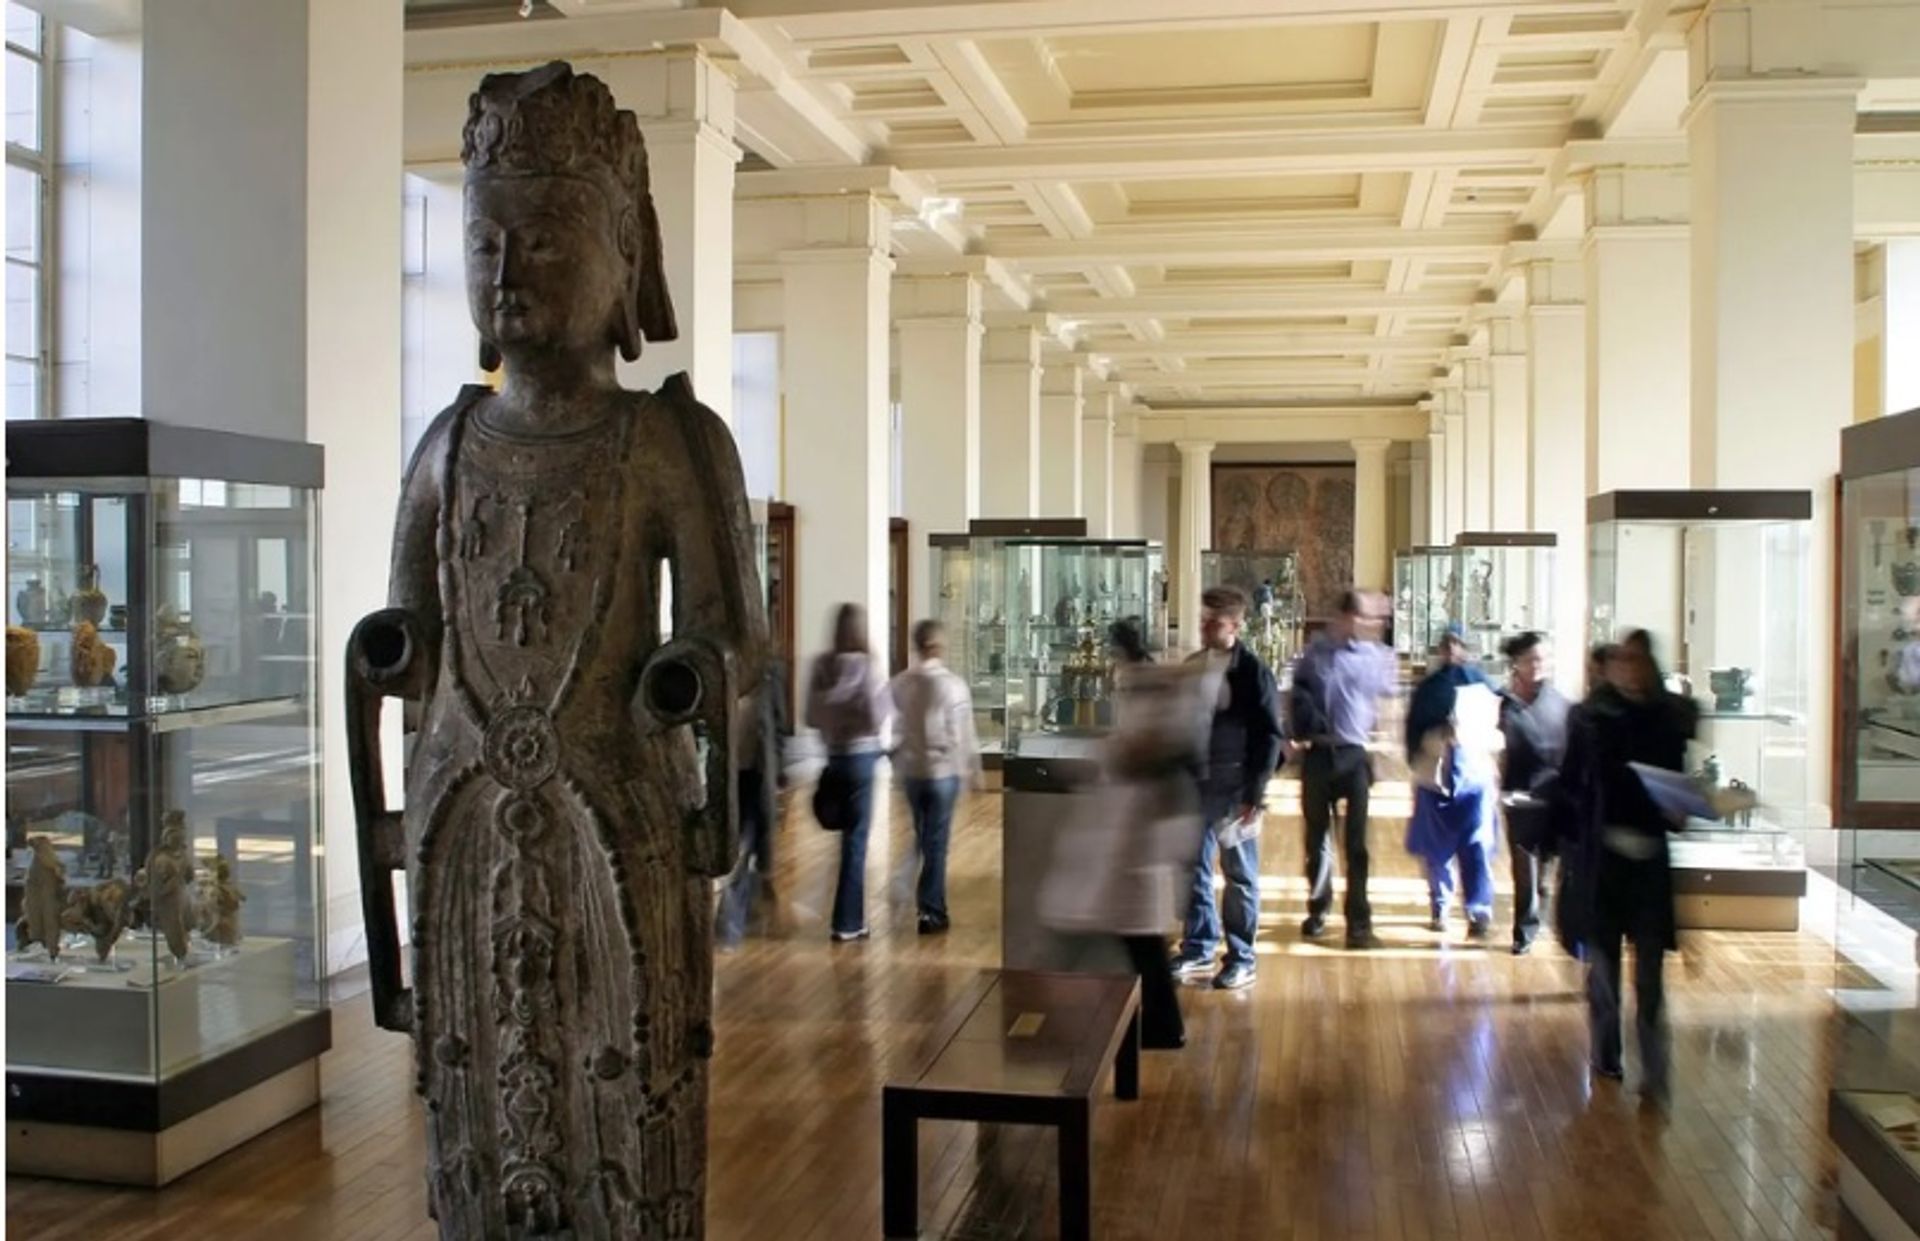 הגלריה של דרום מזרח אסיה במוזיאון הבריטי

באדיבות המוזיאון הבריטי / טוויטר